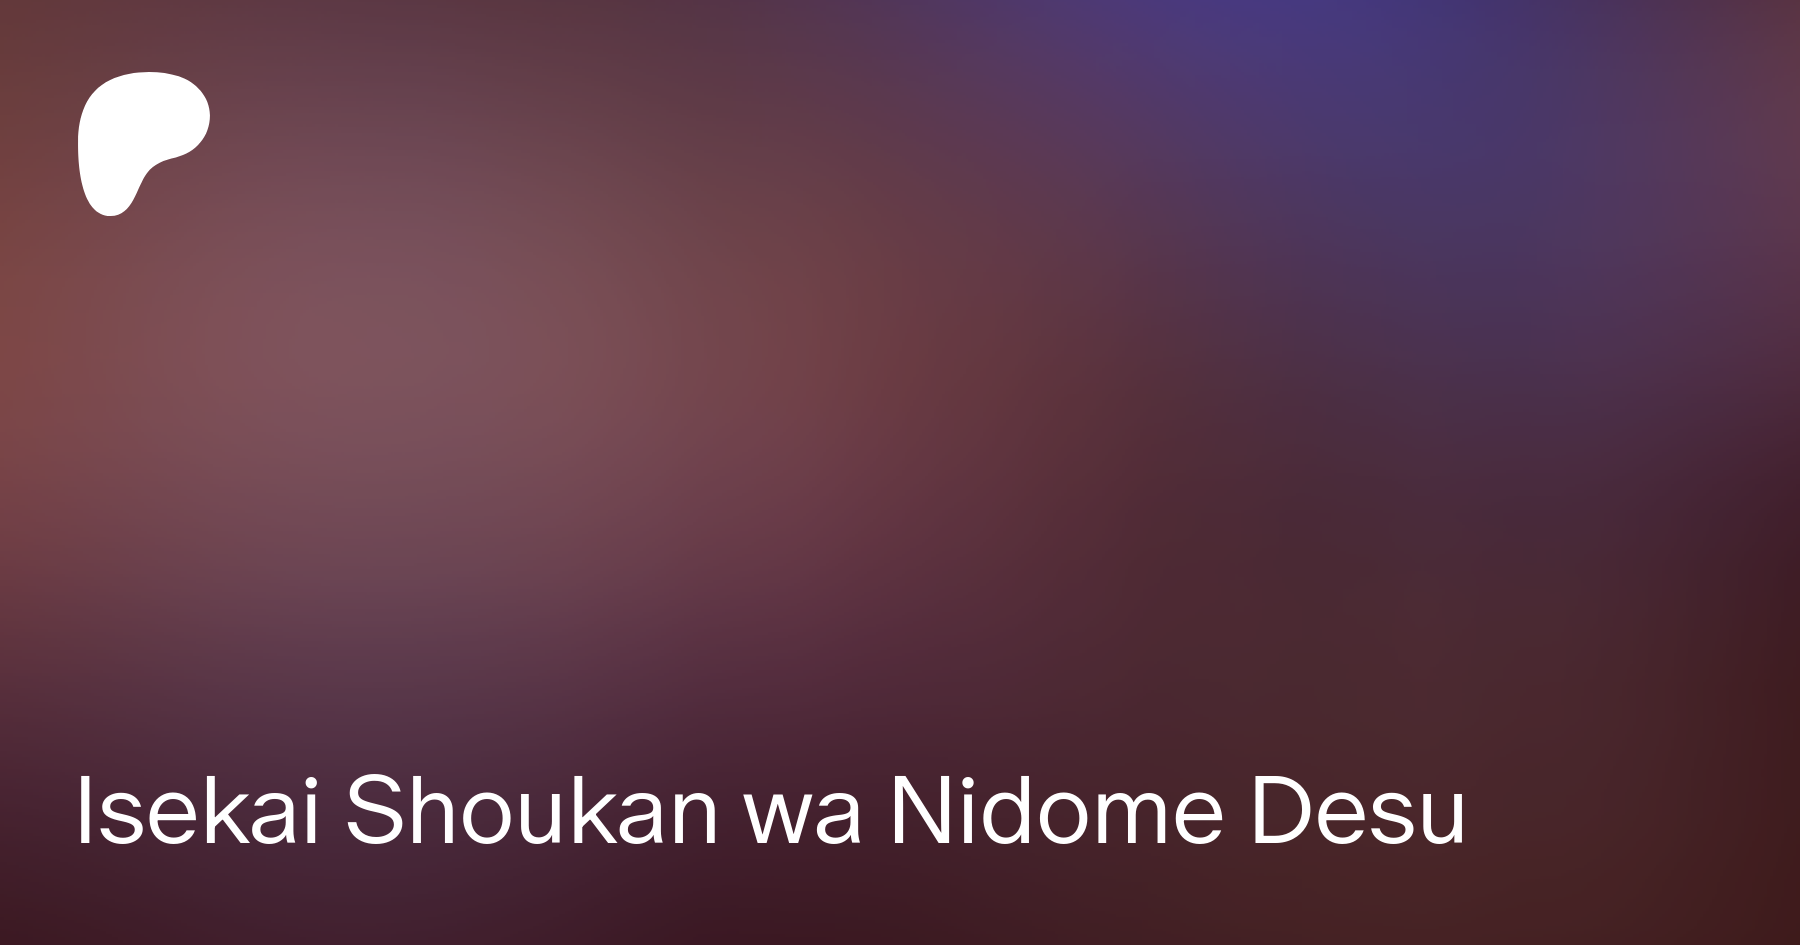 Isekai Shoukan wa Nidome desu (Invocado Para Outro Mundo De